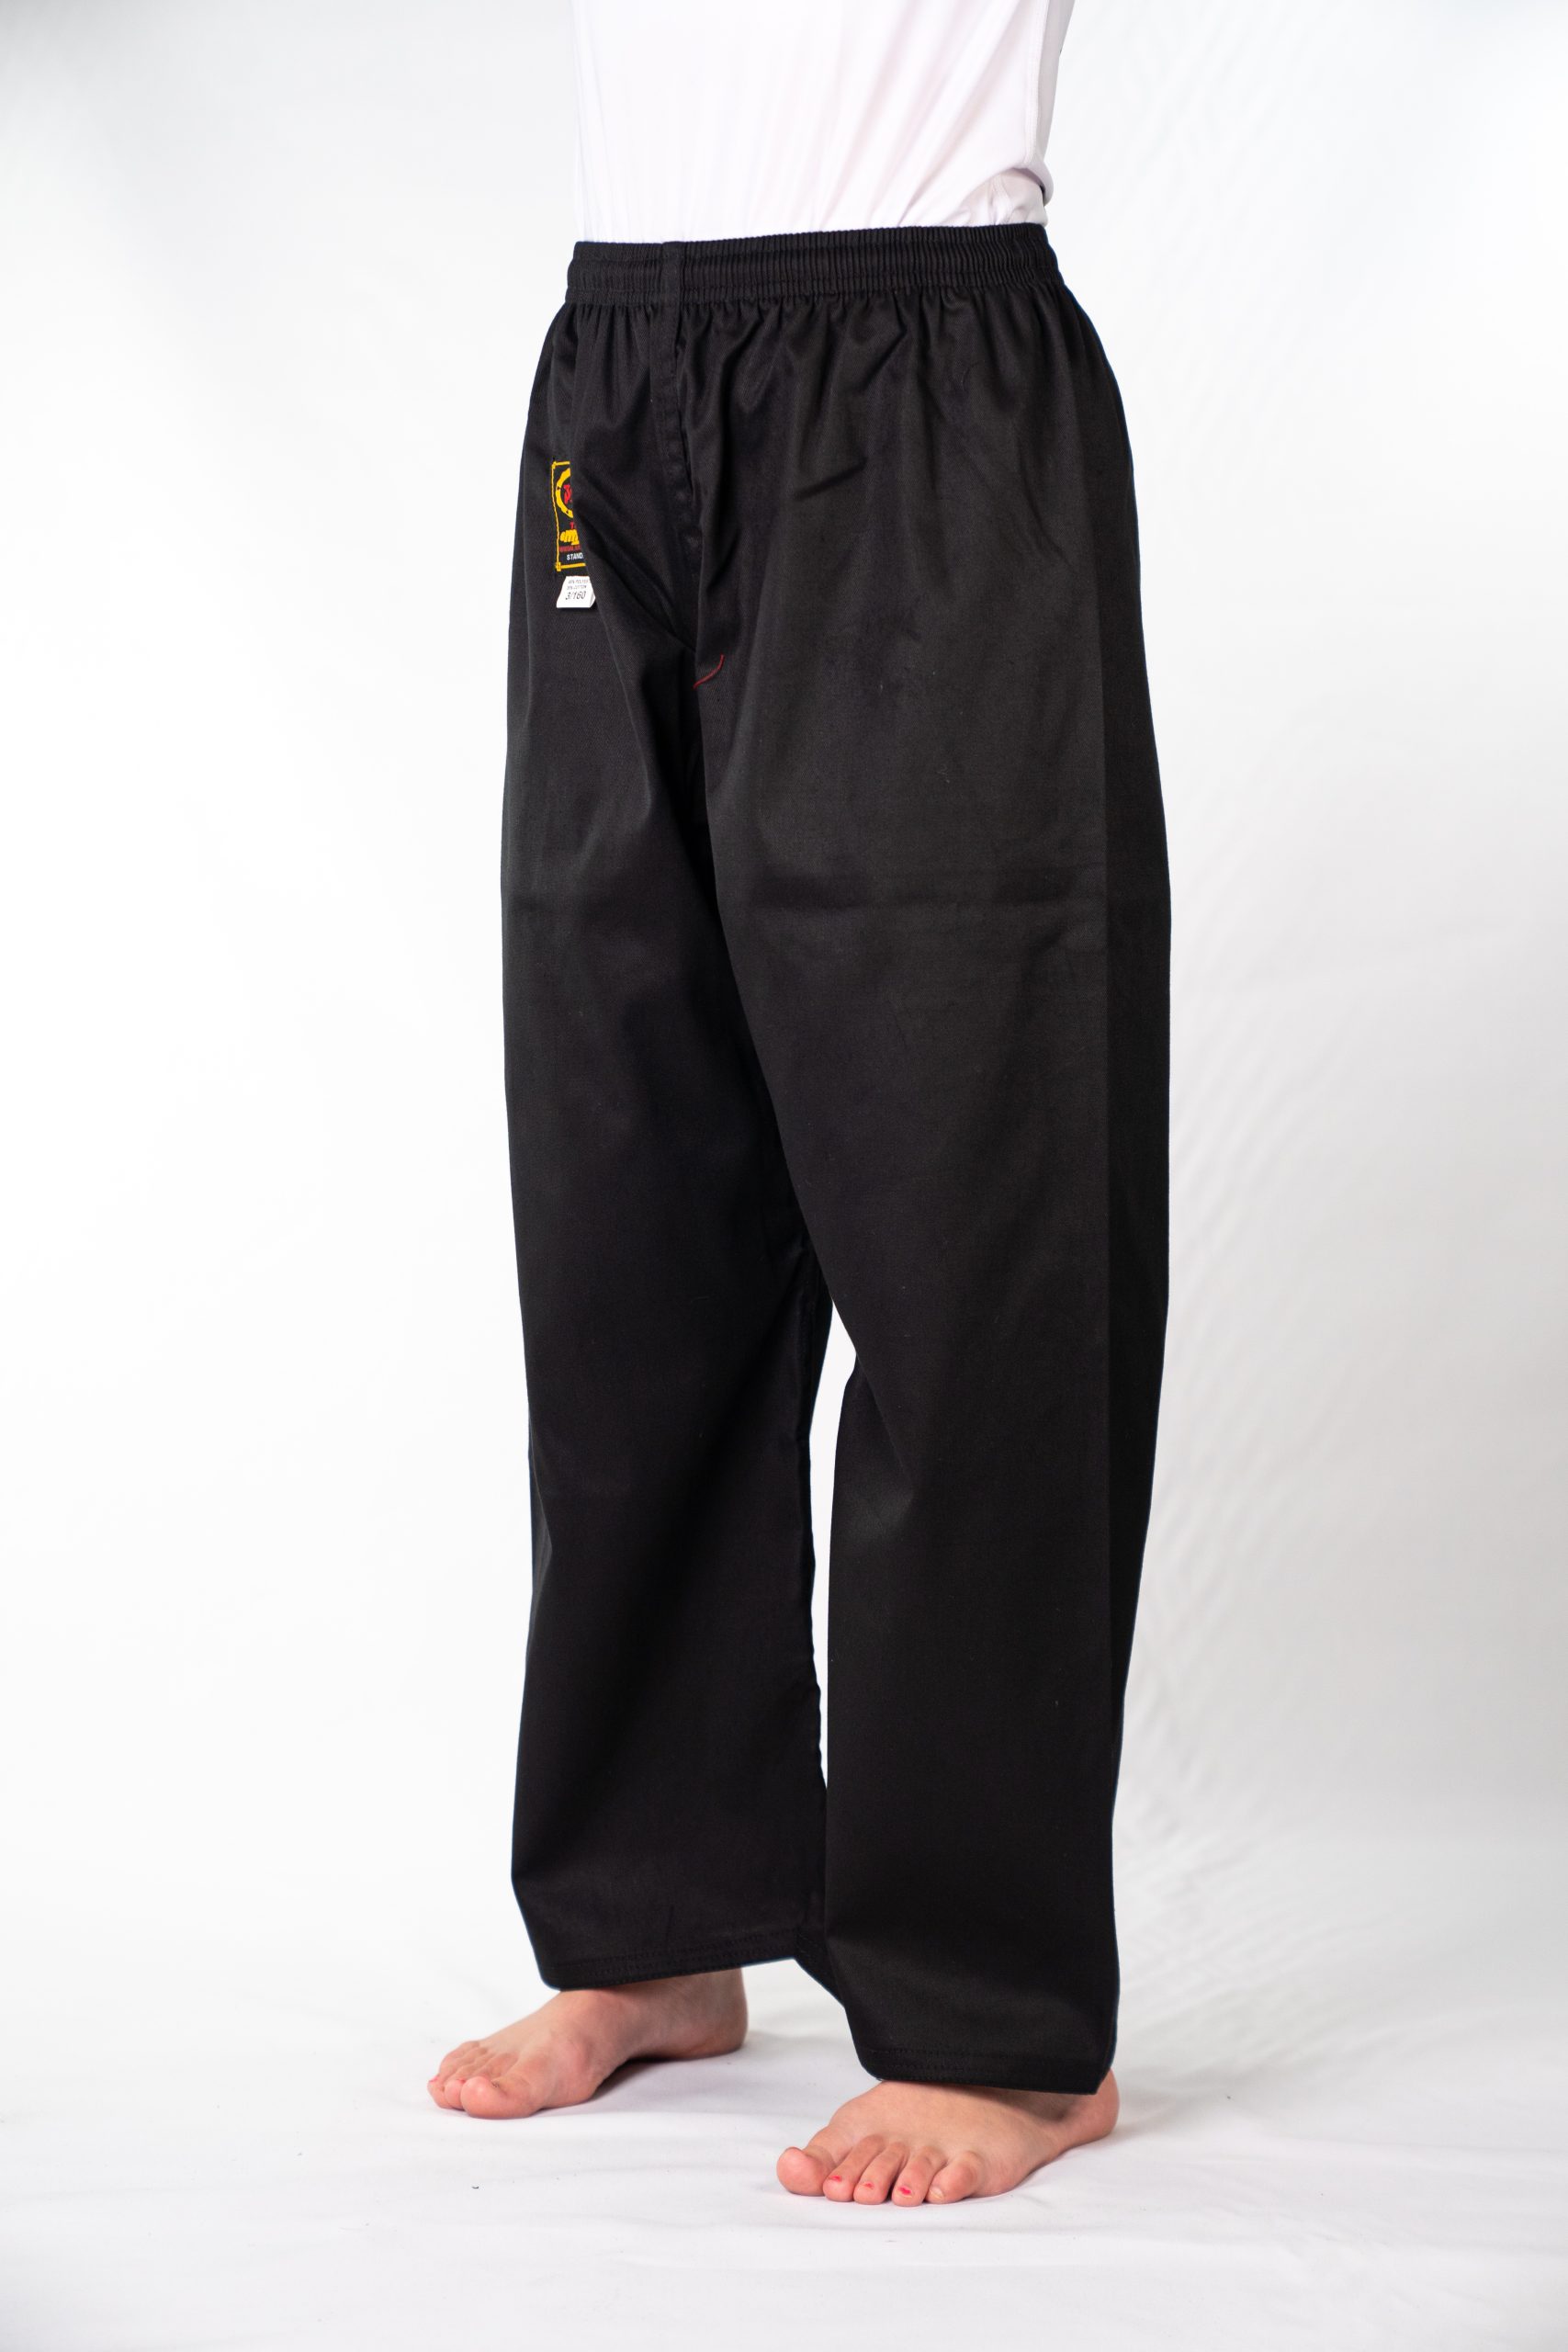 Martial Art Pants / Kick Pants Elastic Waist - Tans Martial Arts Supplier